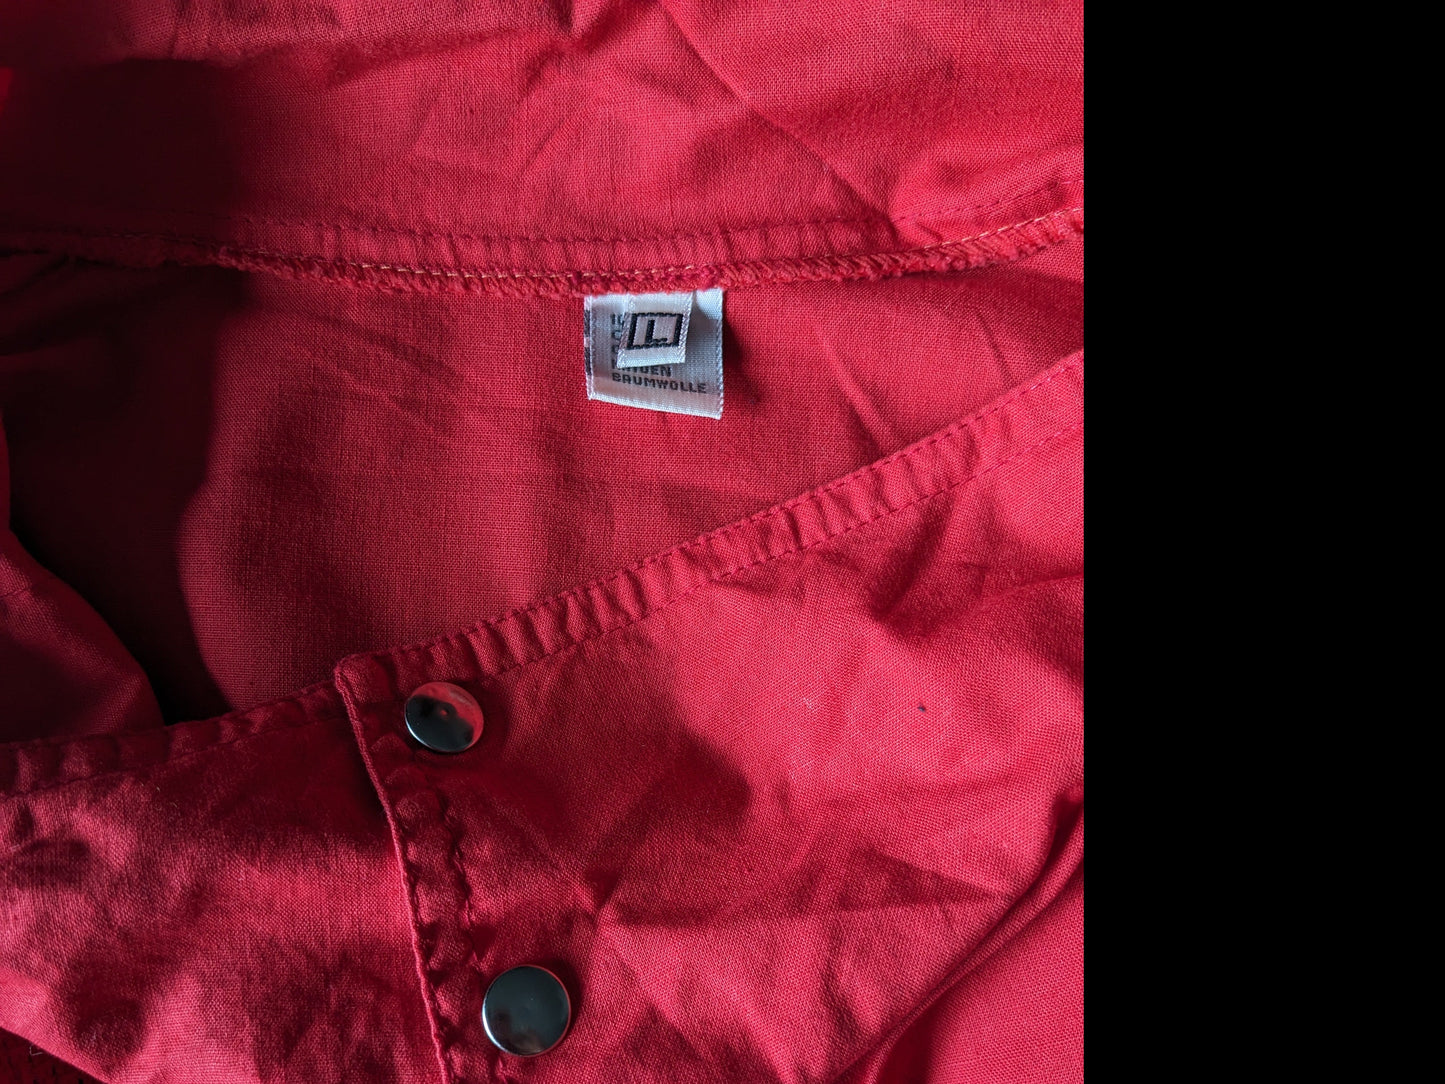 Vintage Polo -Pullover mit Gummiband. Rot mit Druck. Größe L / XL.